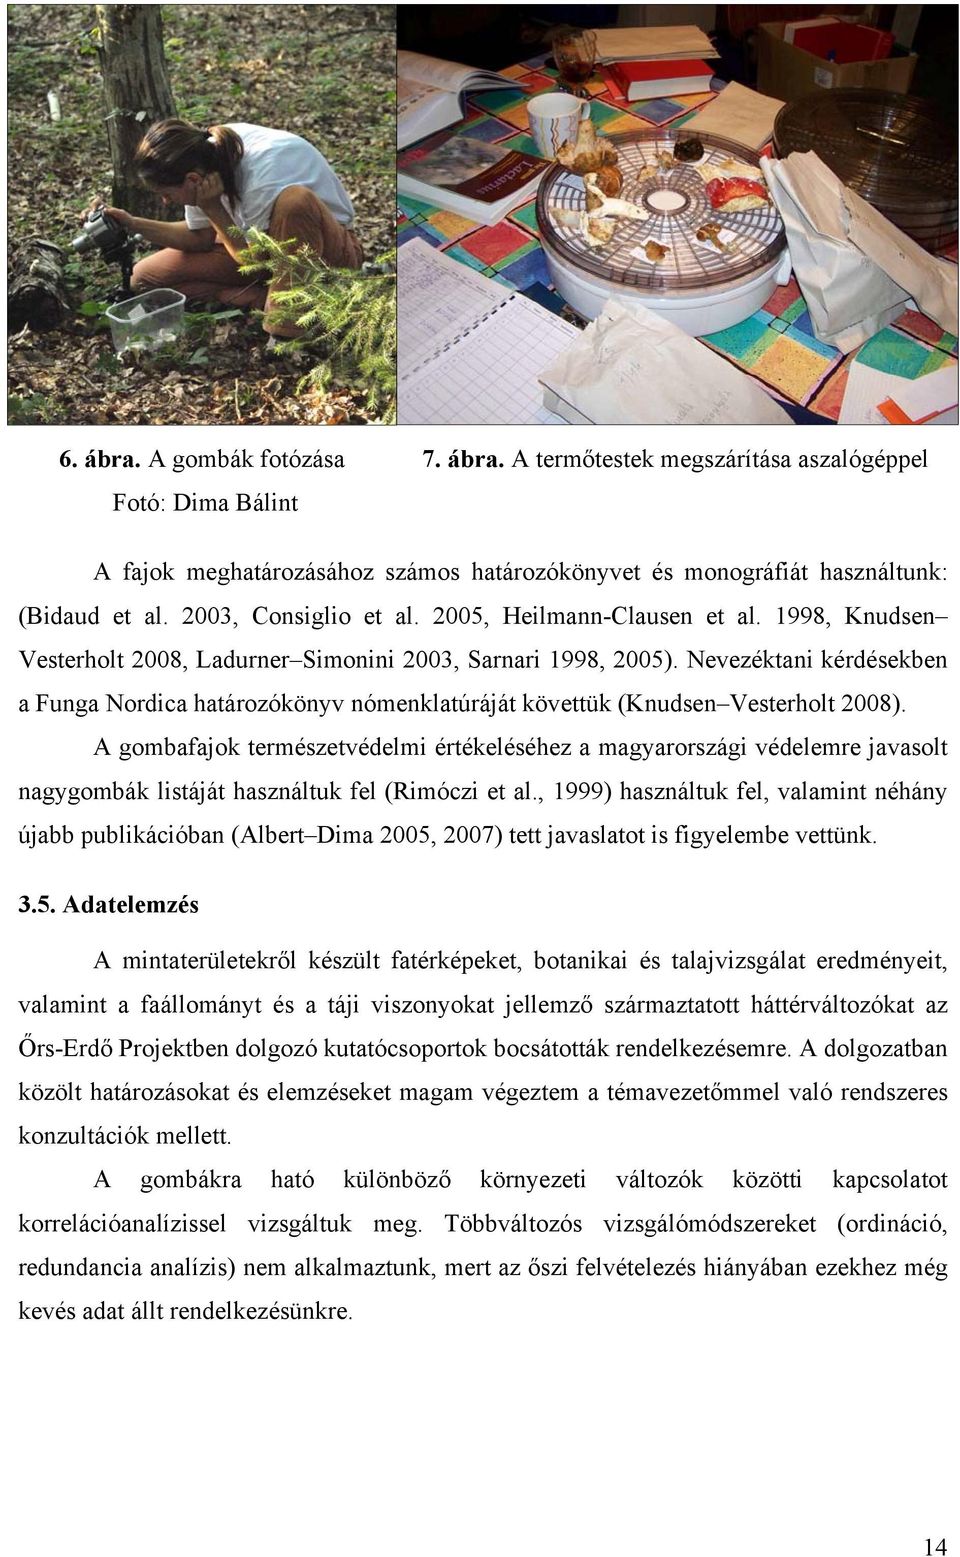 Nevezéktani kérdésekben a Funga Nordica határozókönyv nómenklatúráját követtük (Knudsen Vesterholt 2008).